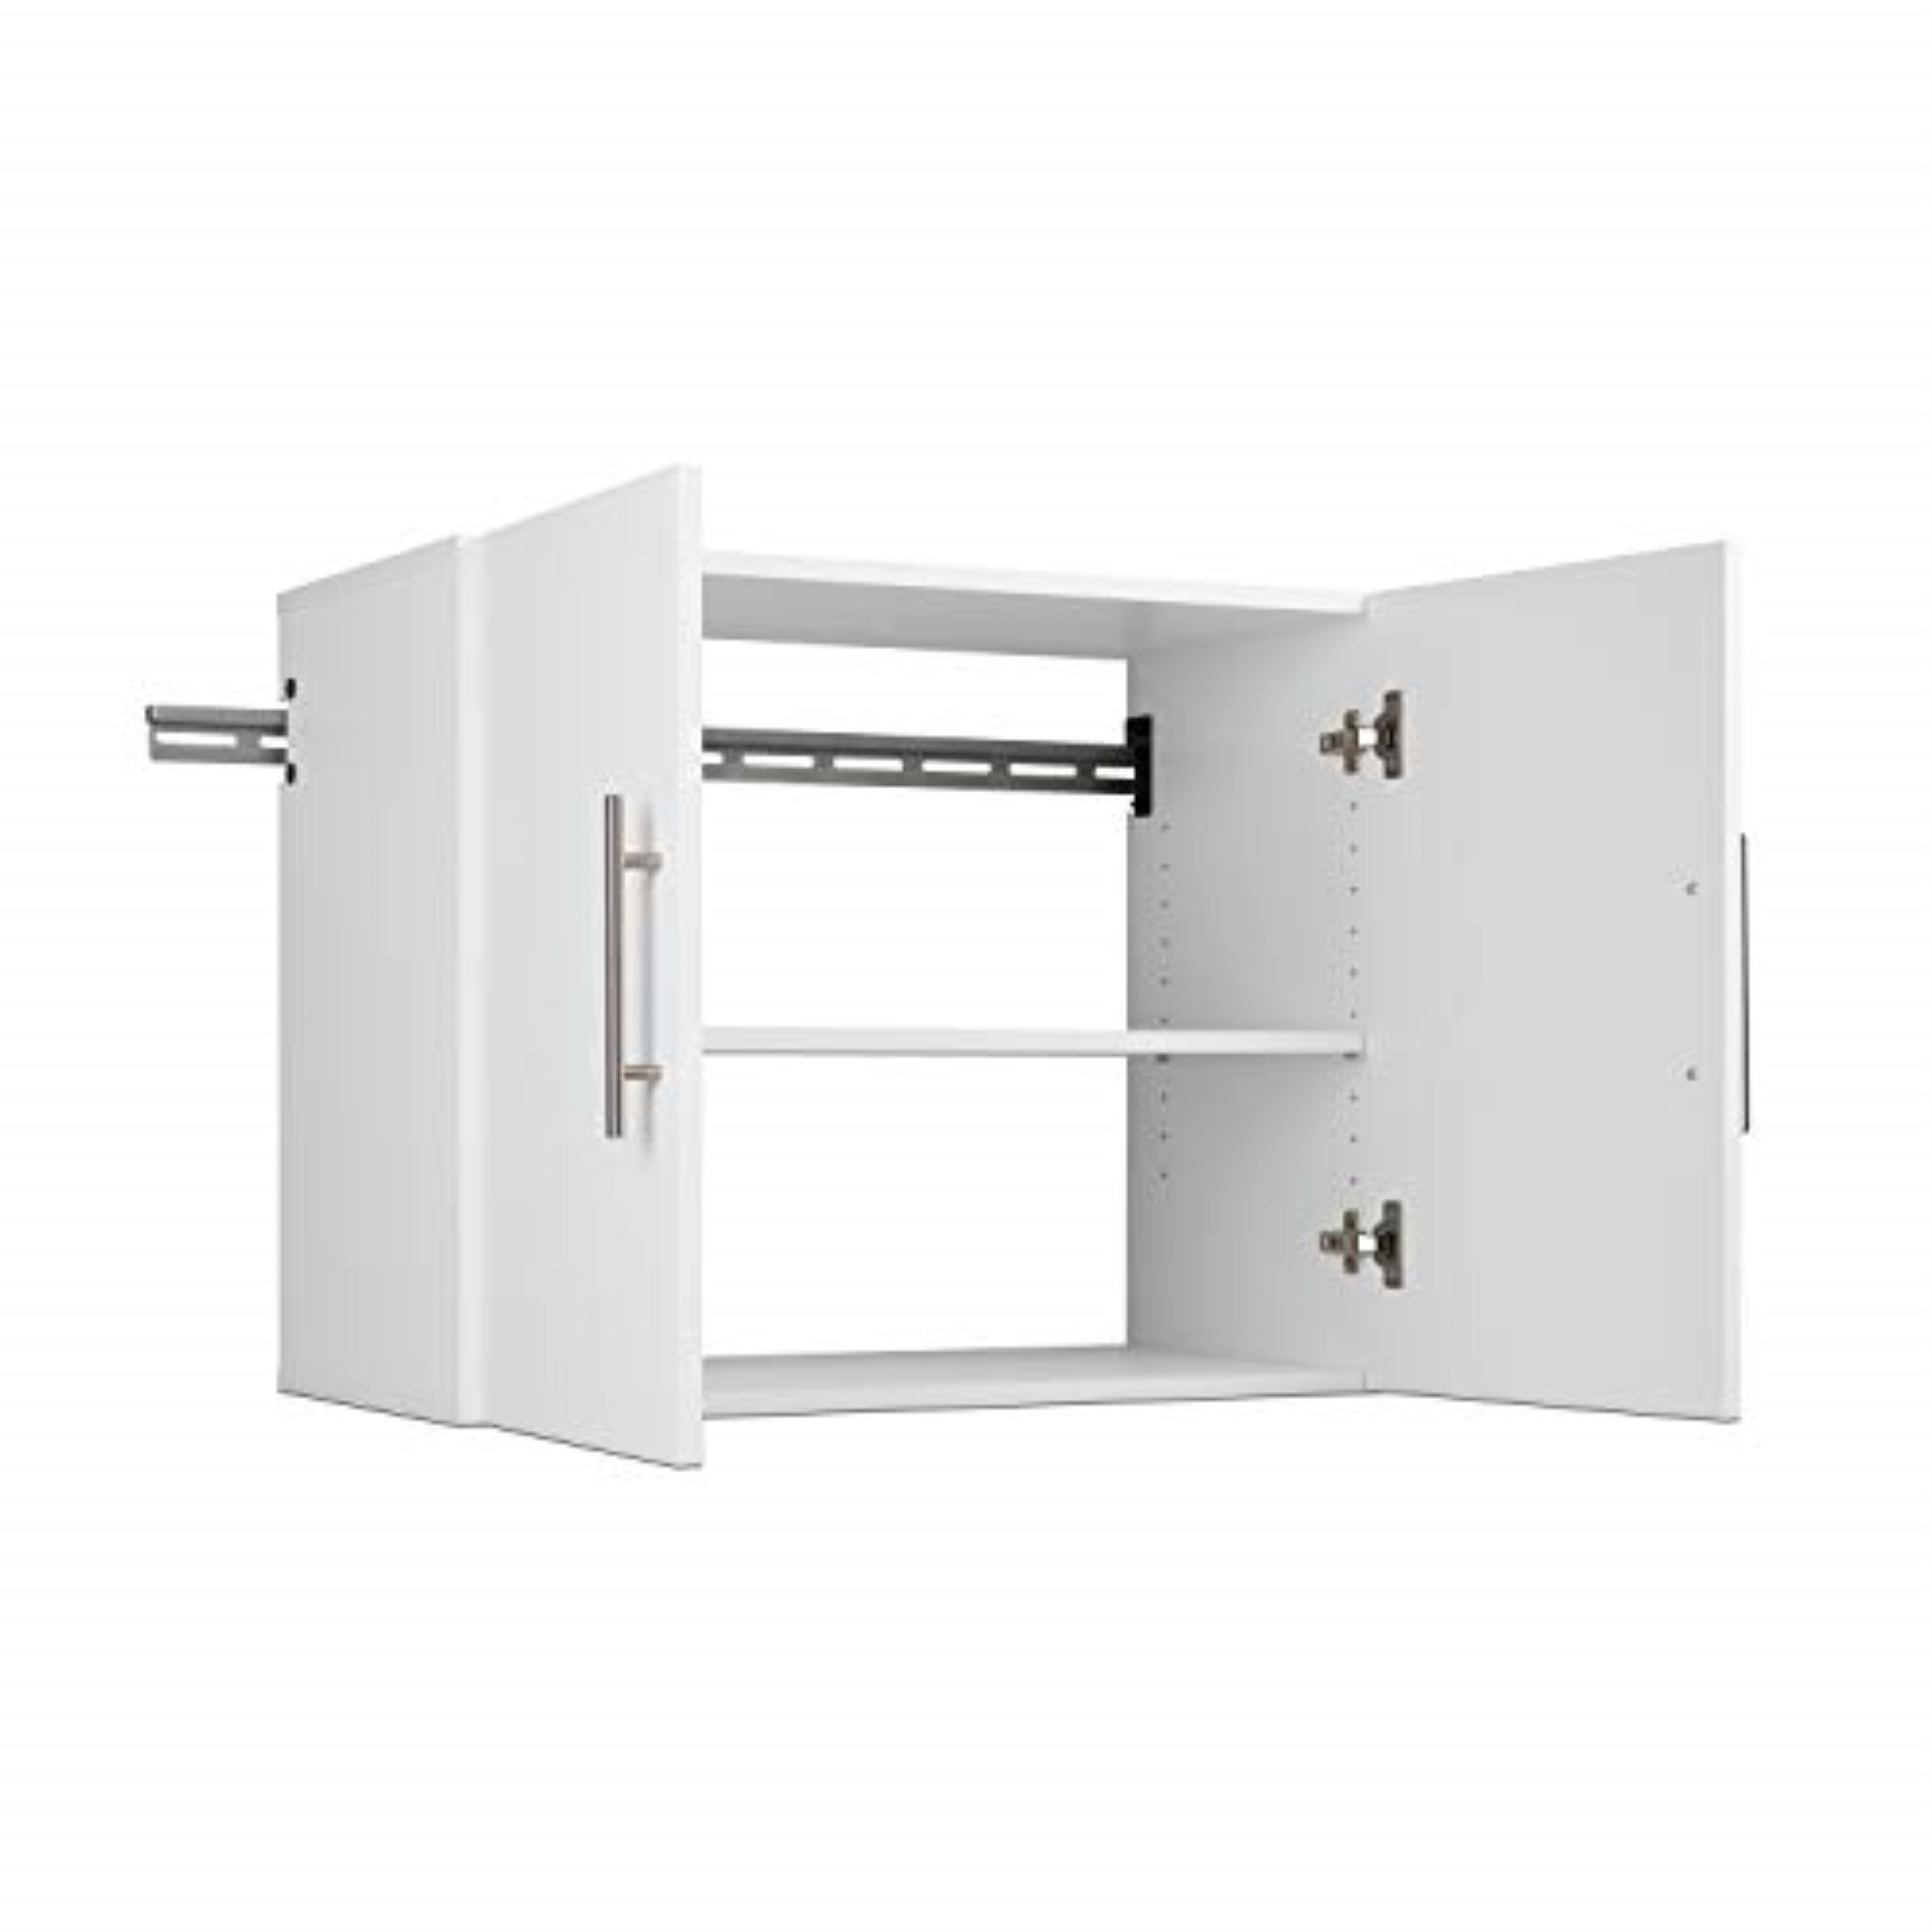 https://assets.wfcdn.com/im/78213763/compr-r85/2071/207167413/arienette-manufactured-wood-single-storage-cabinet-24-h-x-30-w-x-16-d.jpg